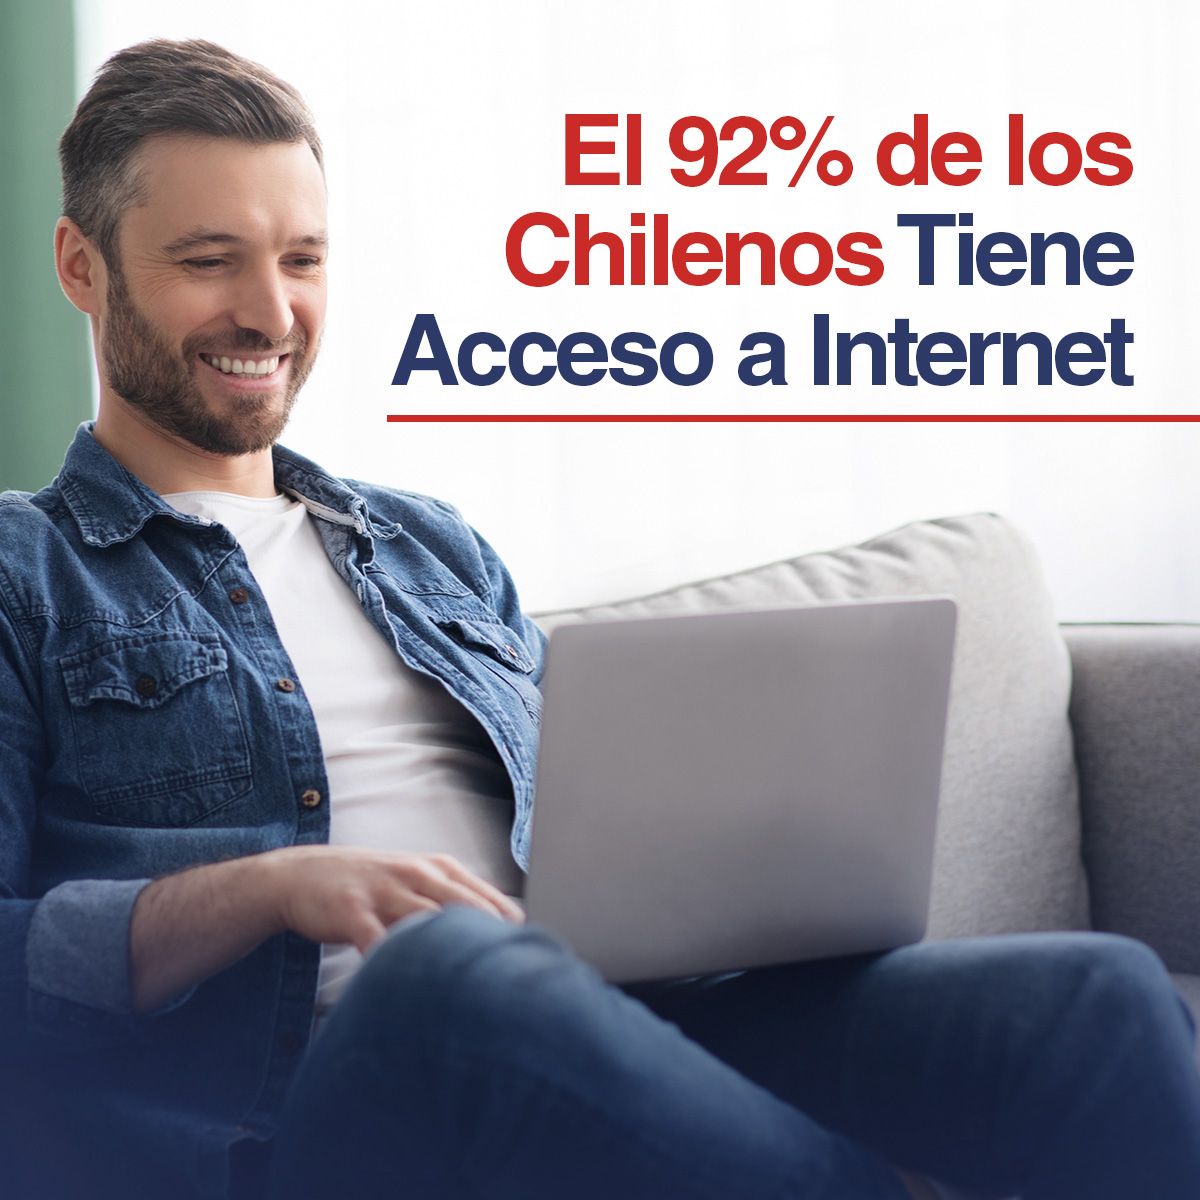 El 92% de los Chilenos Tiene Acceso a Internet